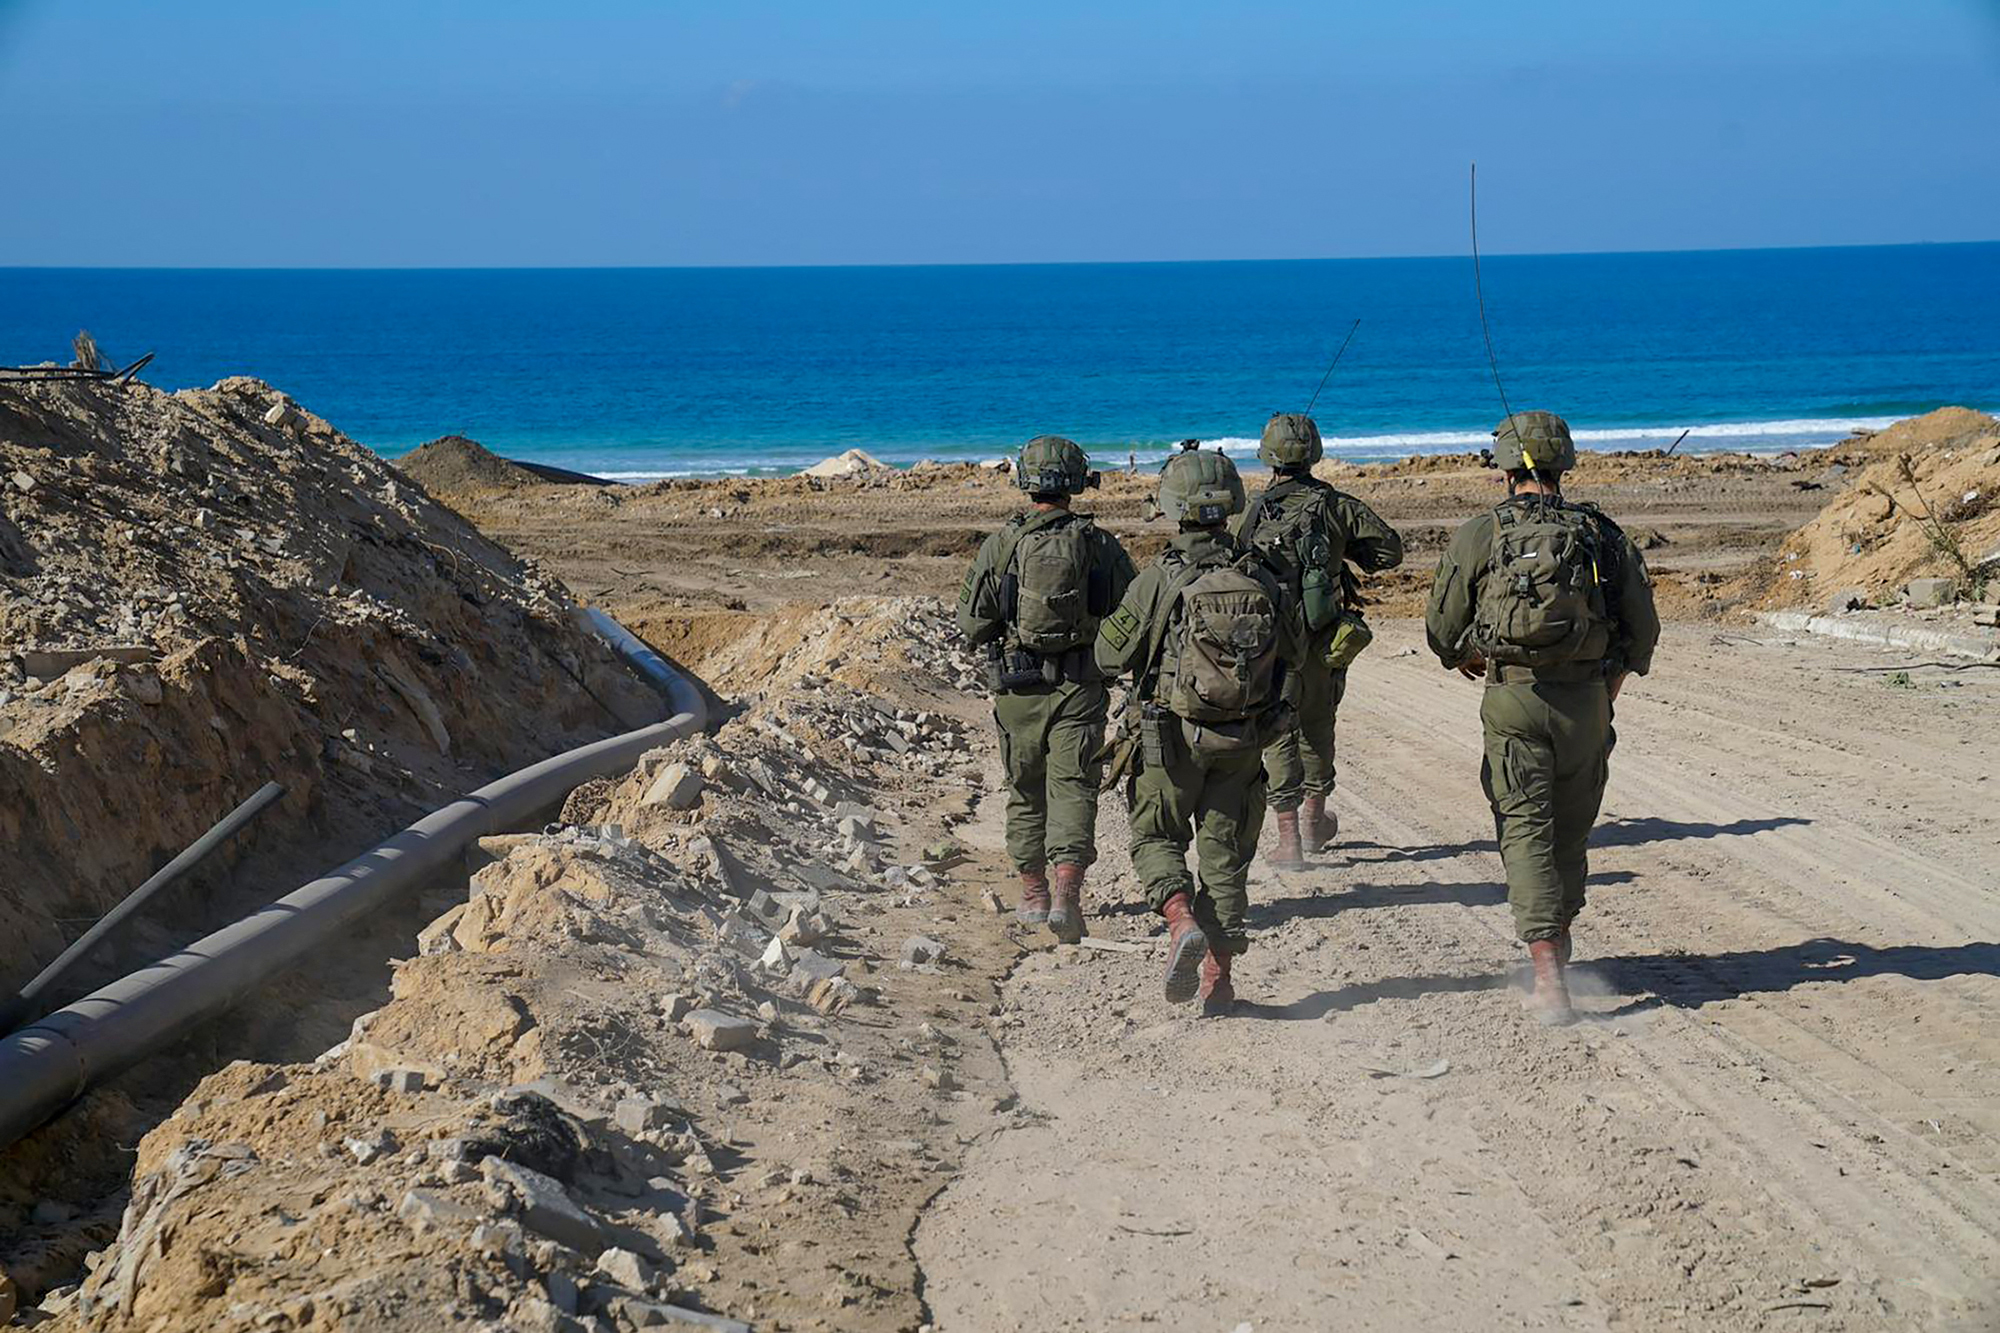 Israelische Soldaten im nördlichen Gazastreifen (Bild: Israely Army/AFP)